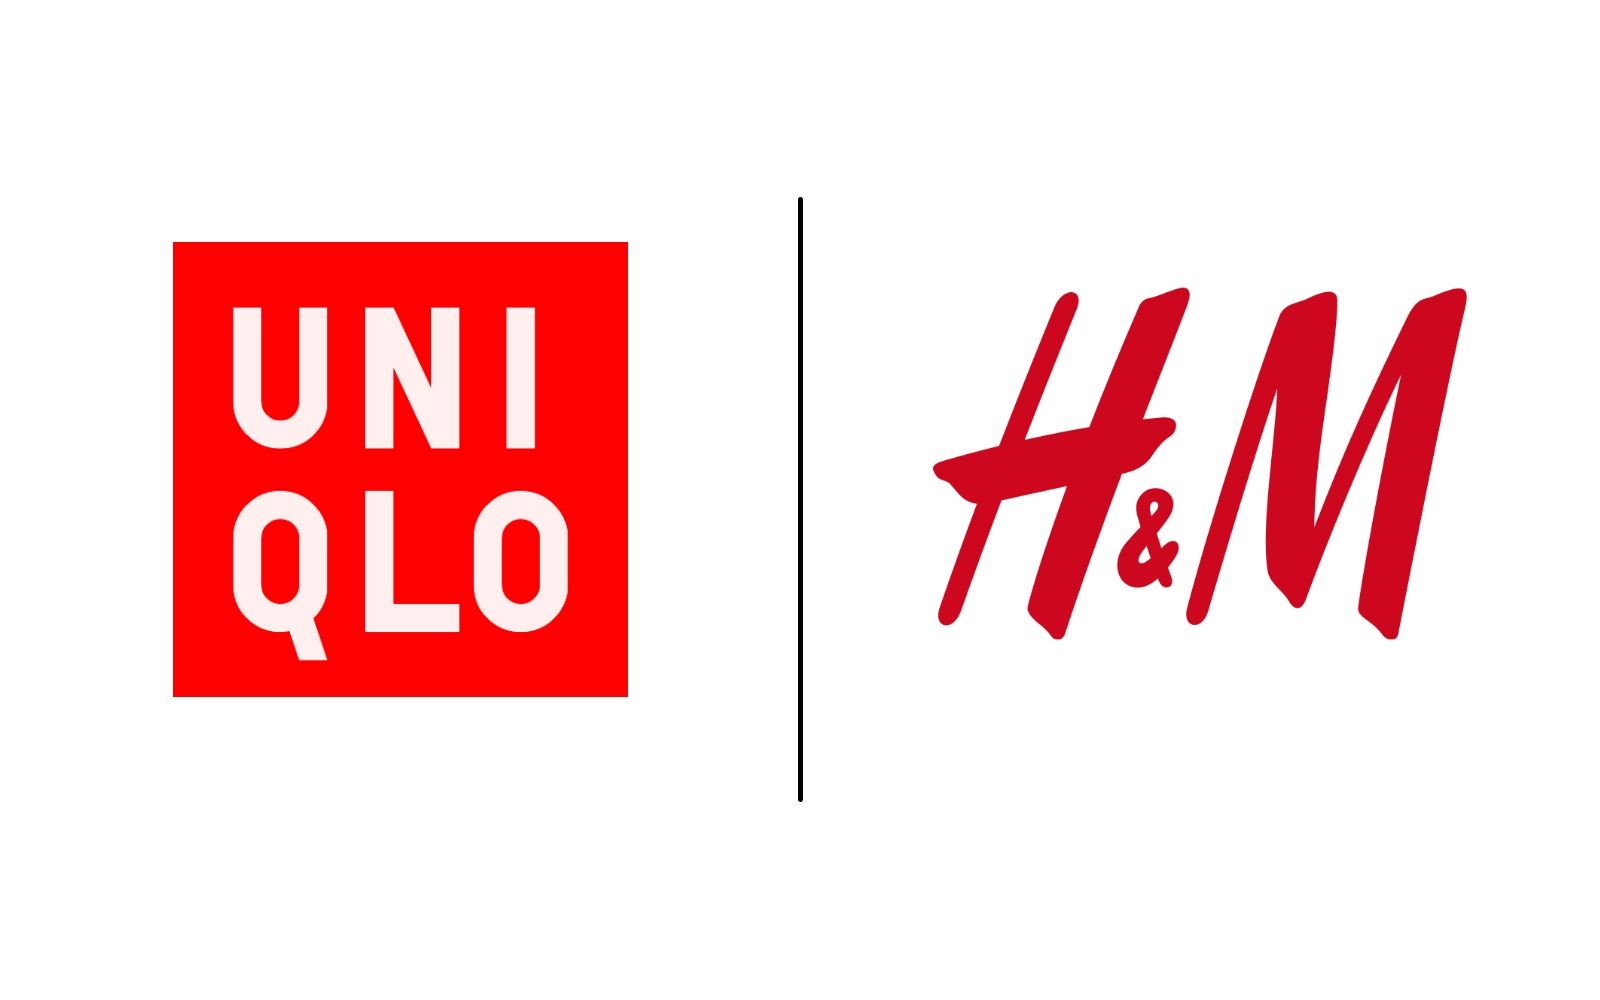 HM vs Uniqlo  Comparably